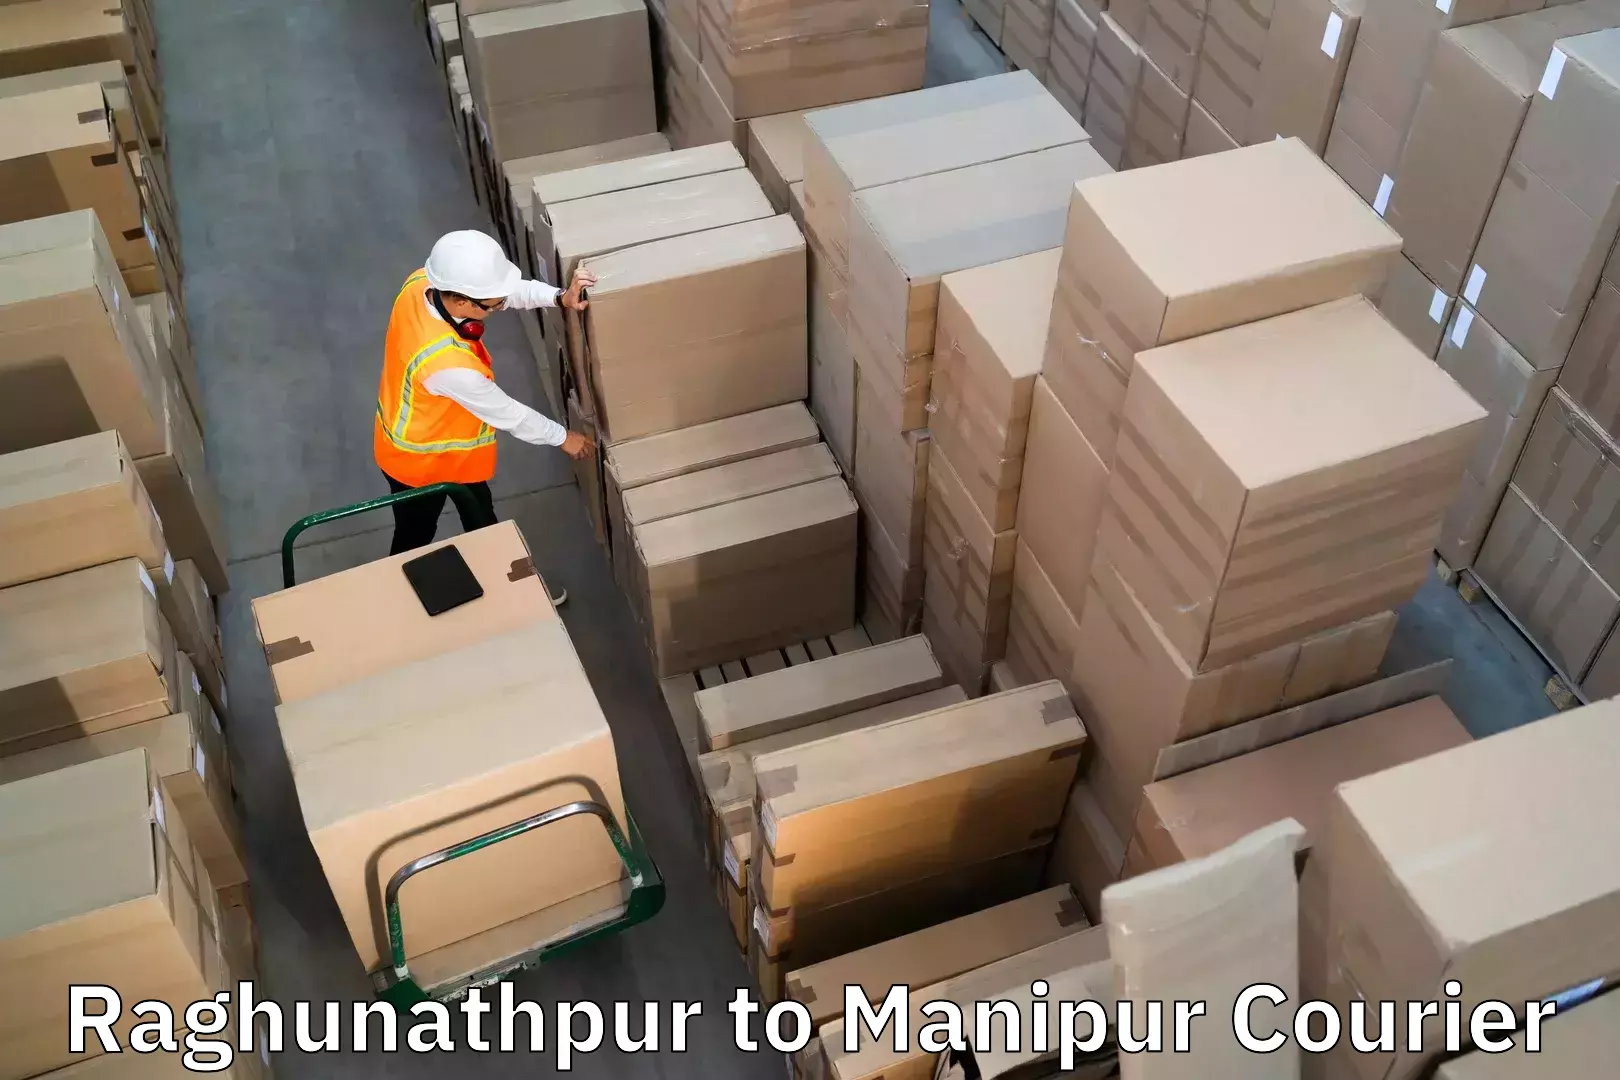 Baggage transport innovation Raghunathpur to Thoubal